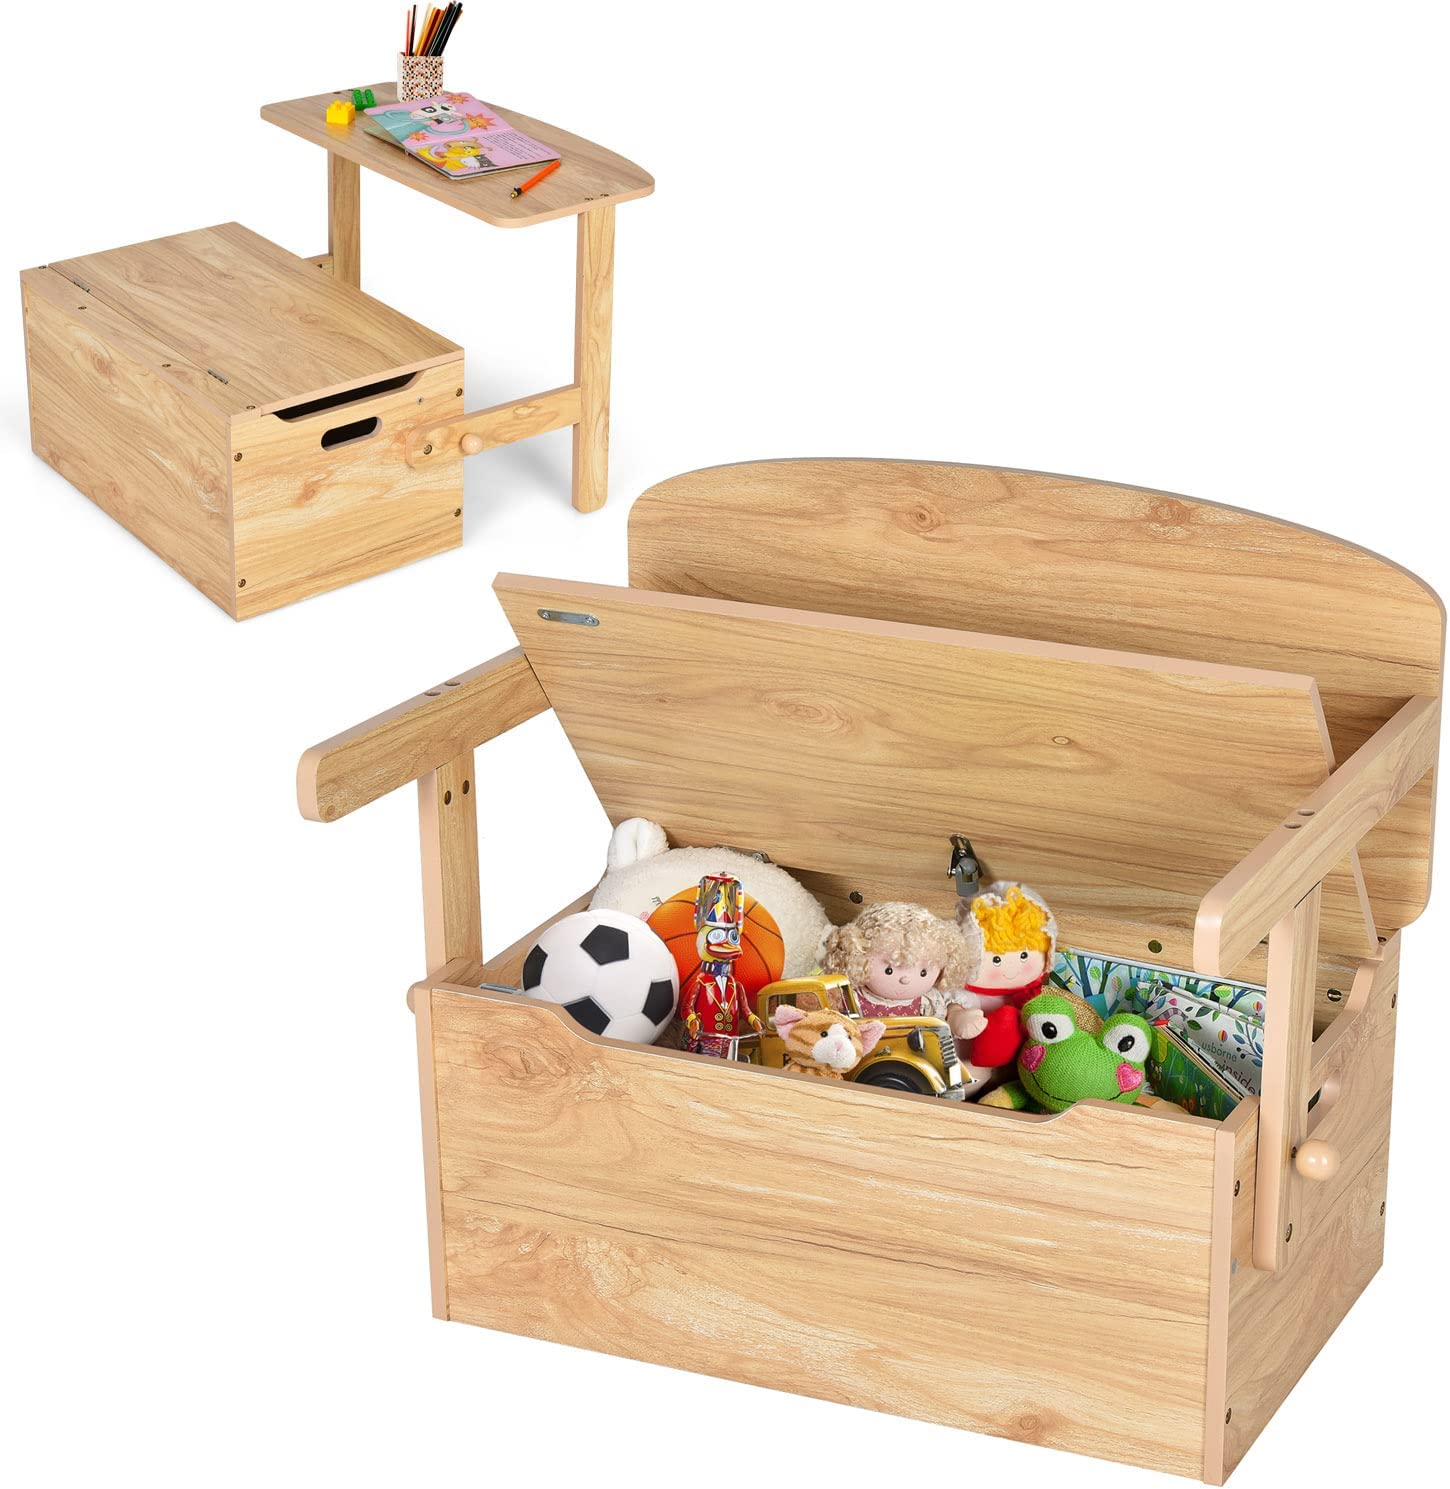 3 in Kinder Spielzeugkiste & Holz aus Deckel, 1 3 Kindersitzgruppe Truhenbank & Kindermöbel & Stauraum für Kinderbank mit